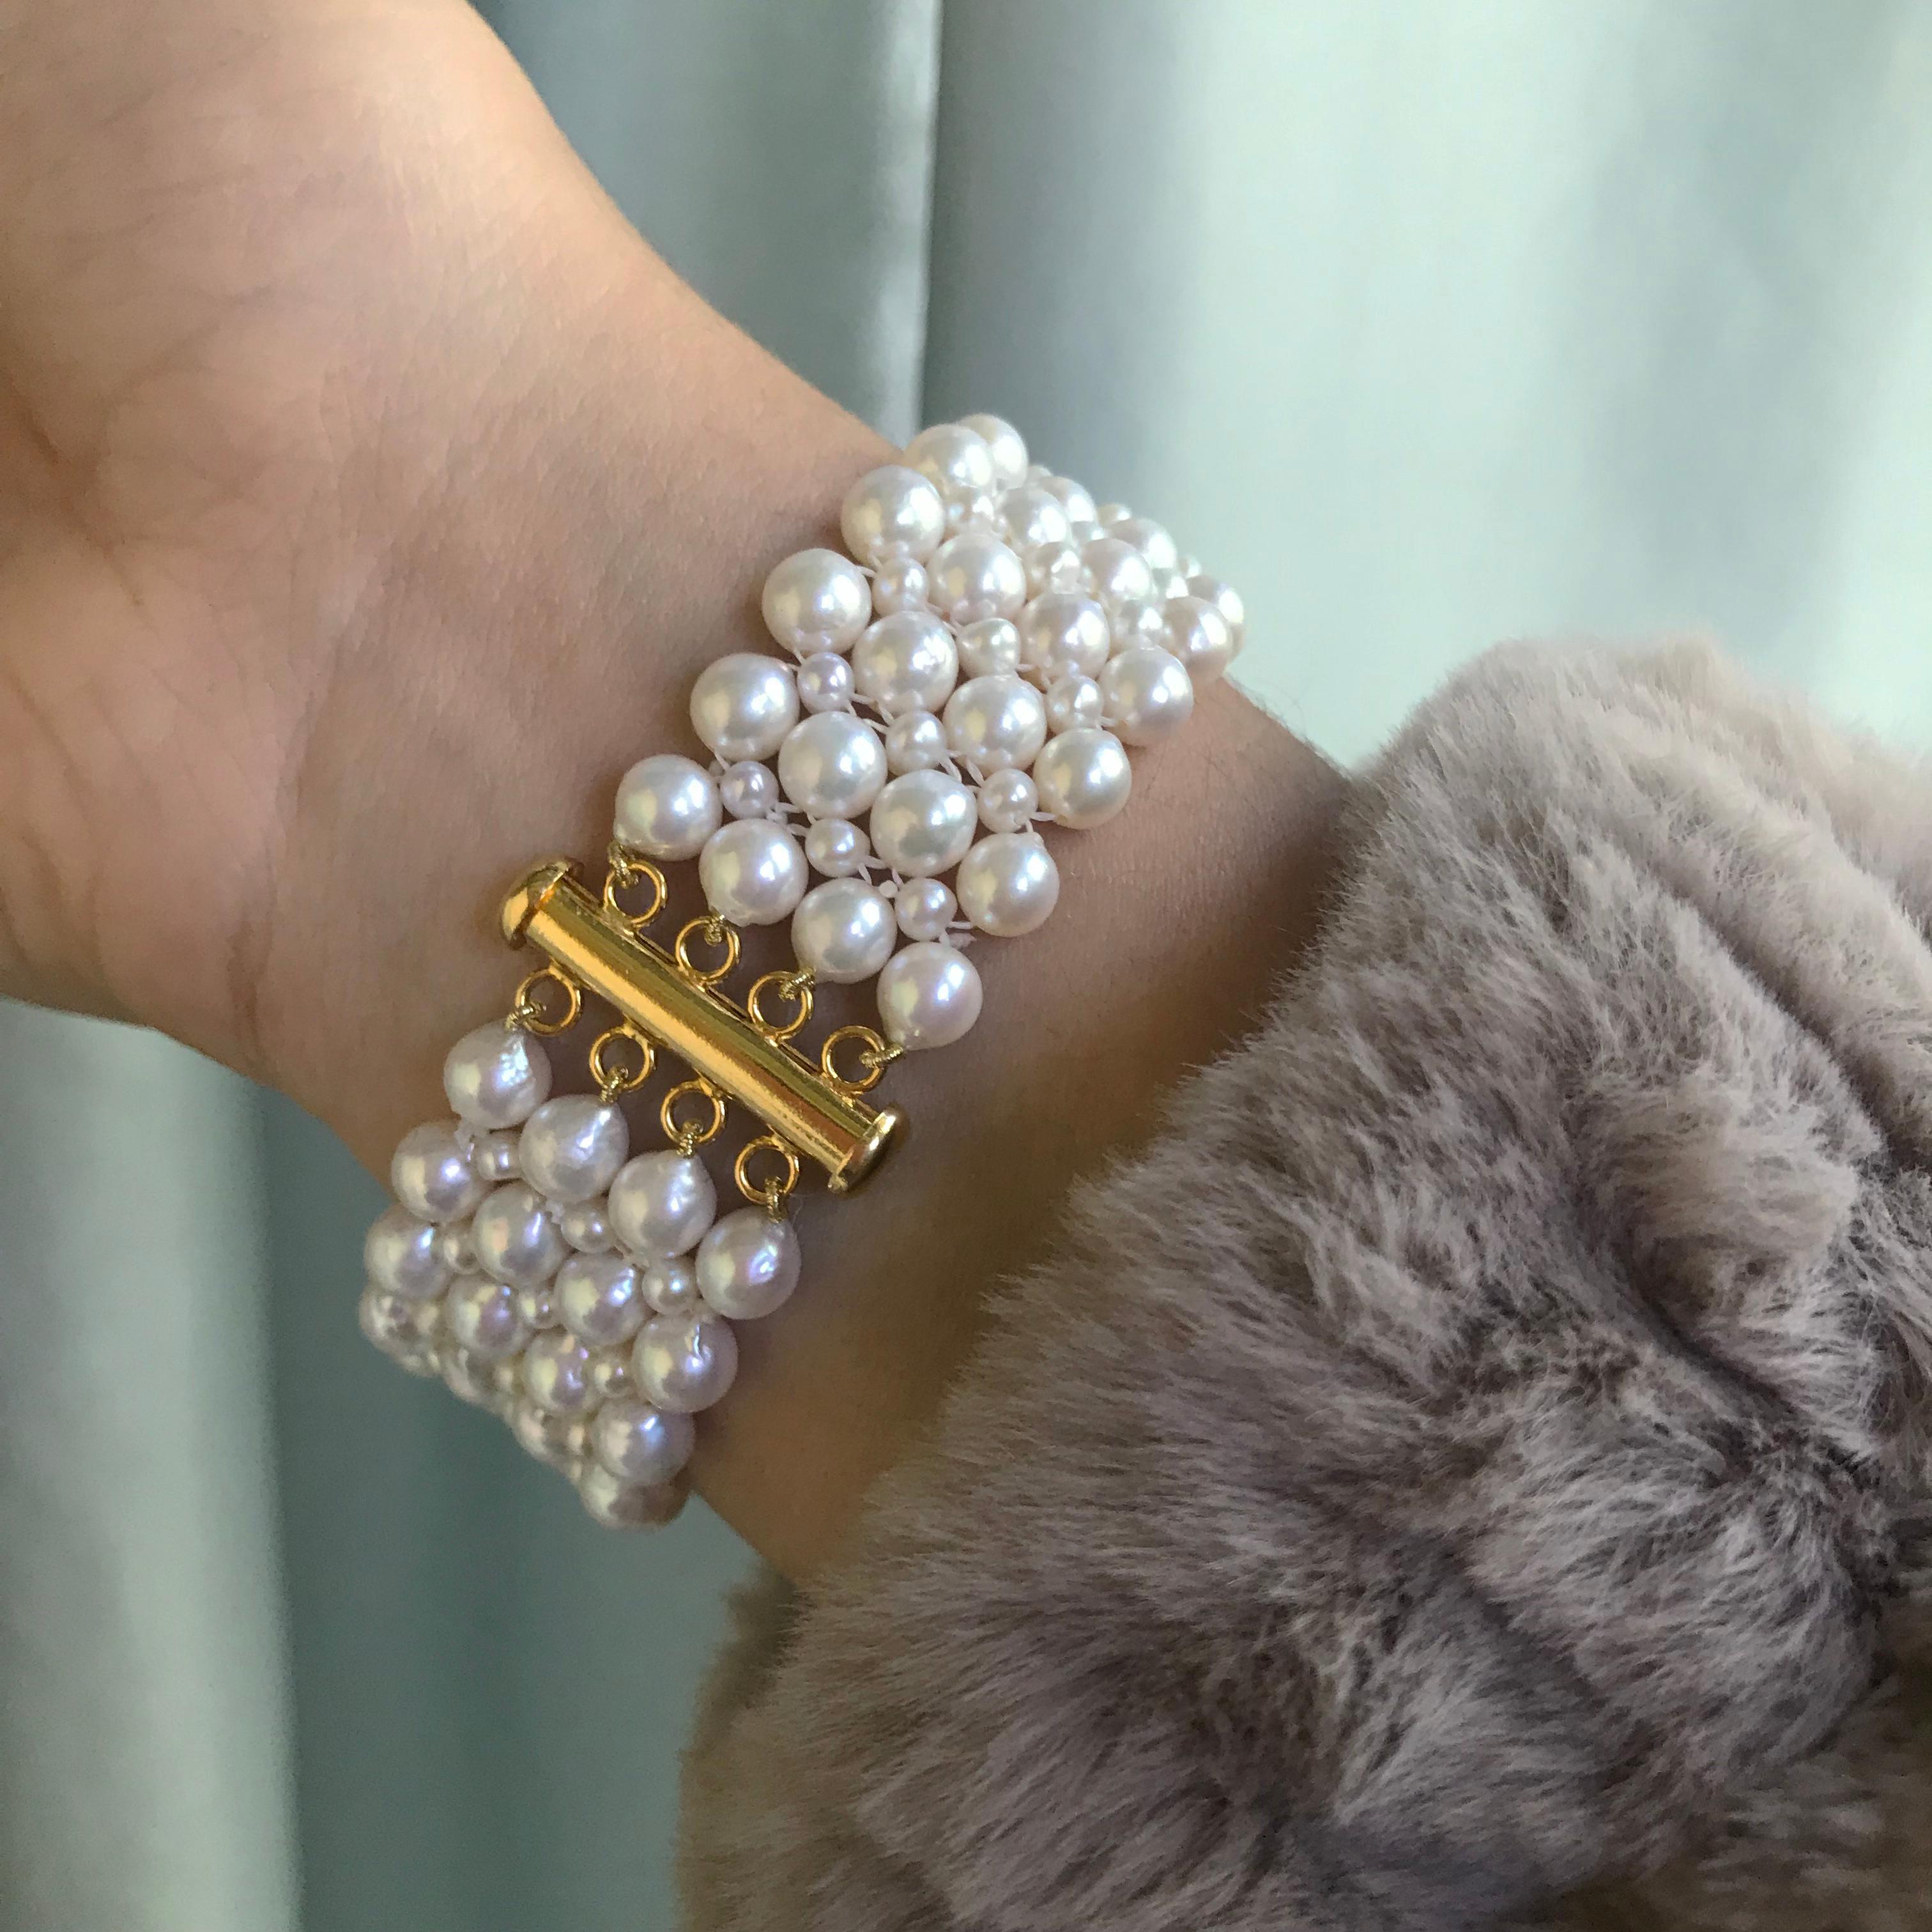 2mm pearl bracelet